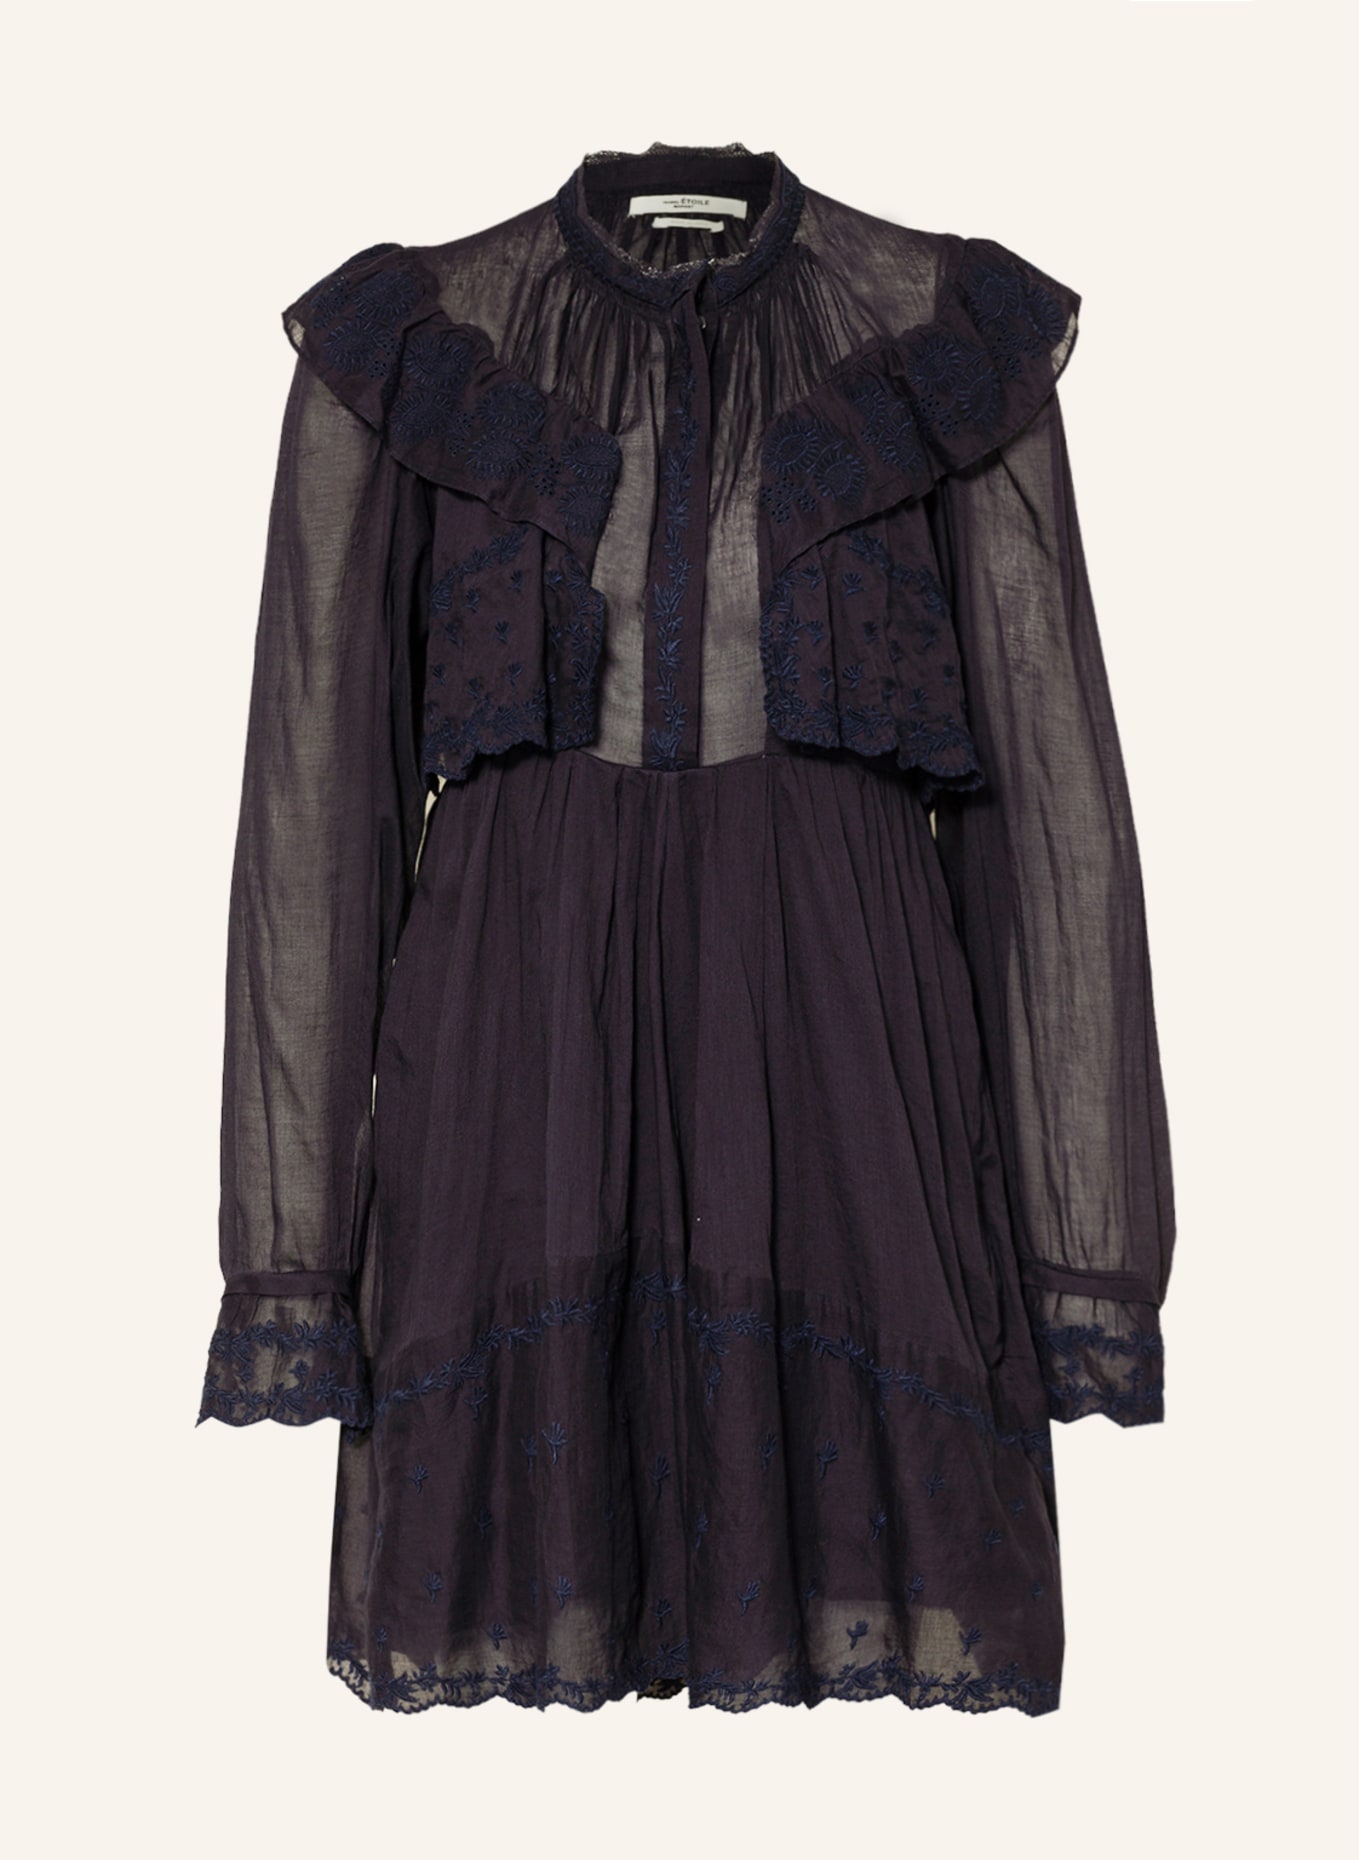 MARANT ÉTOILE Kleid LIMPEZA mit Lochspitze und Volants, Farbe: DUNKELBLAU (Bild 1)